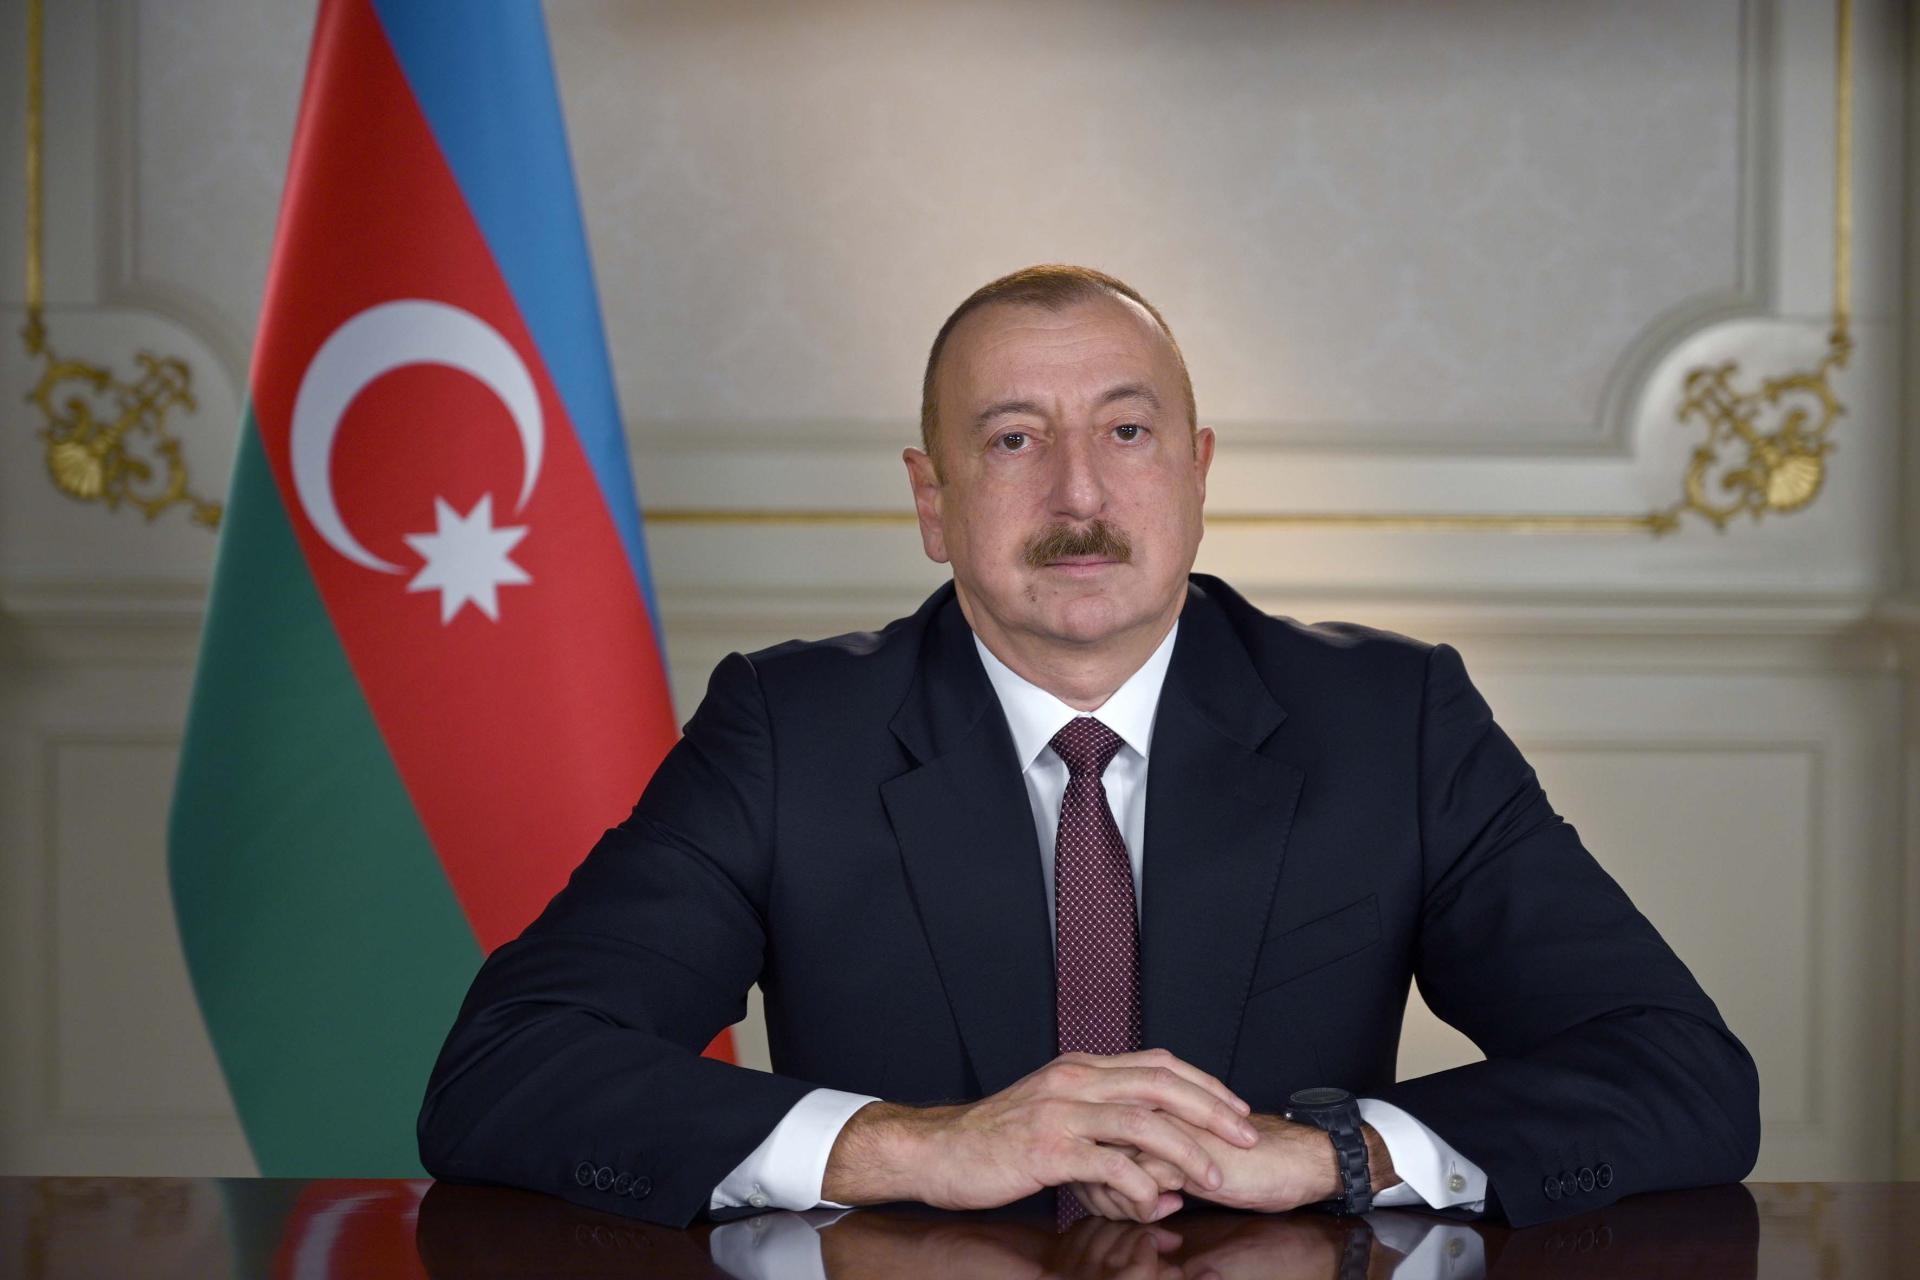 Ильхам Алиев наградил Мевлюта Чавушоглу орденом "Достлуг"